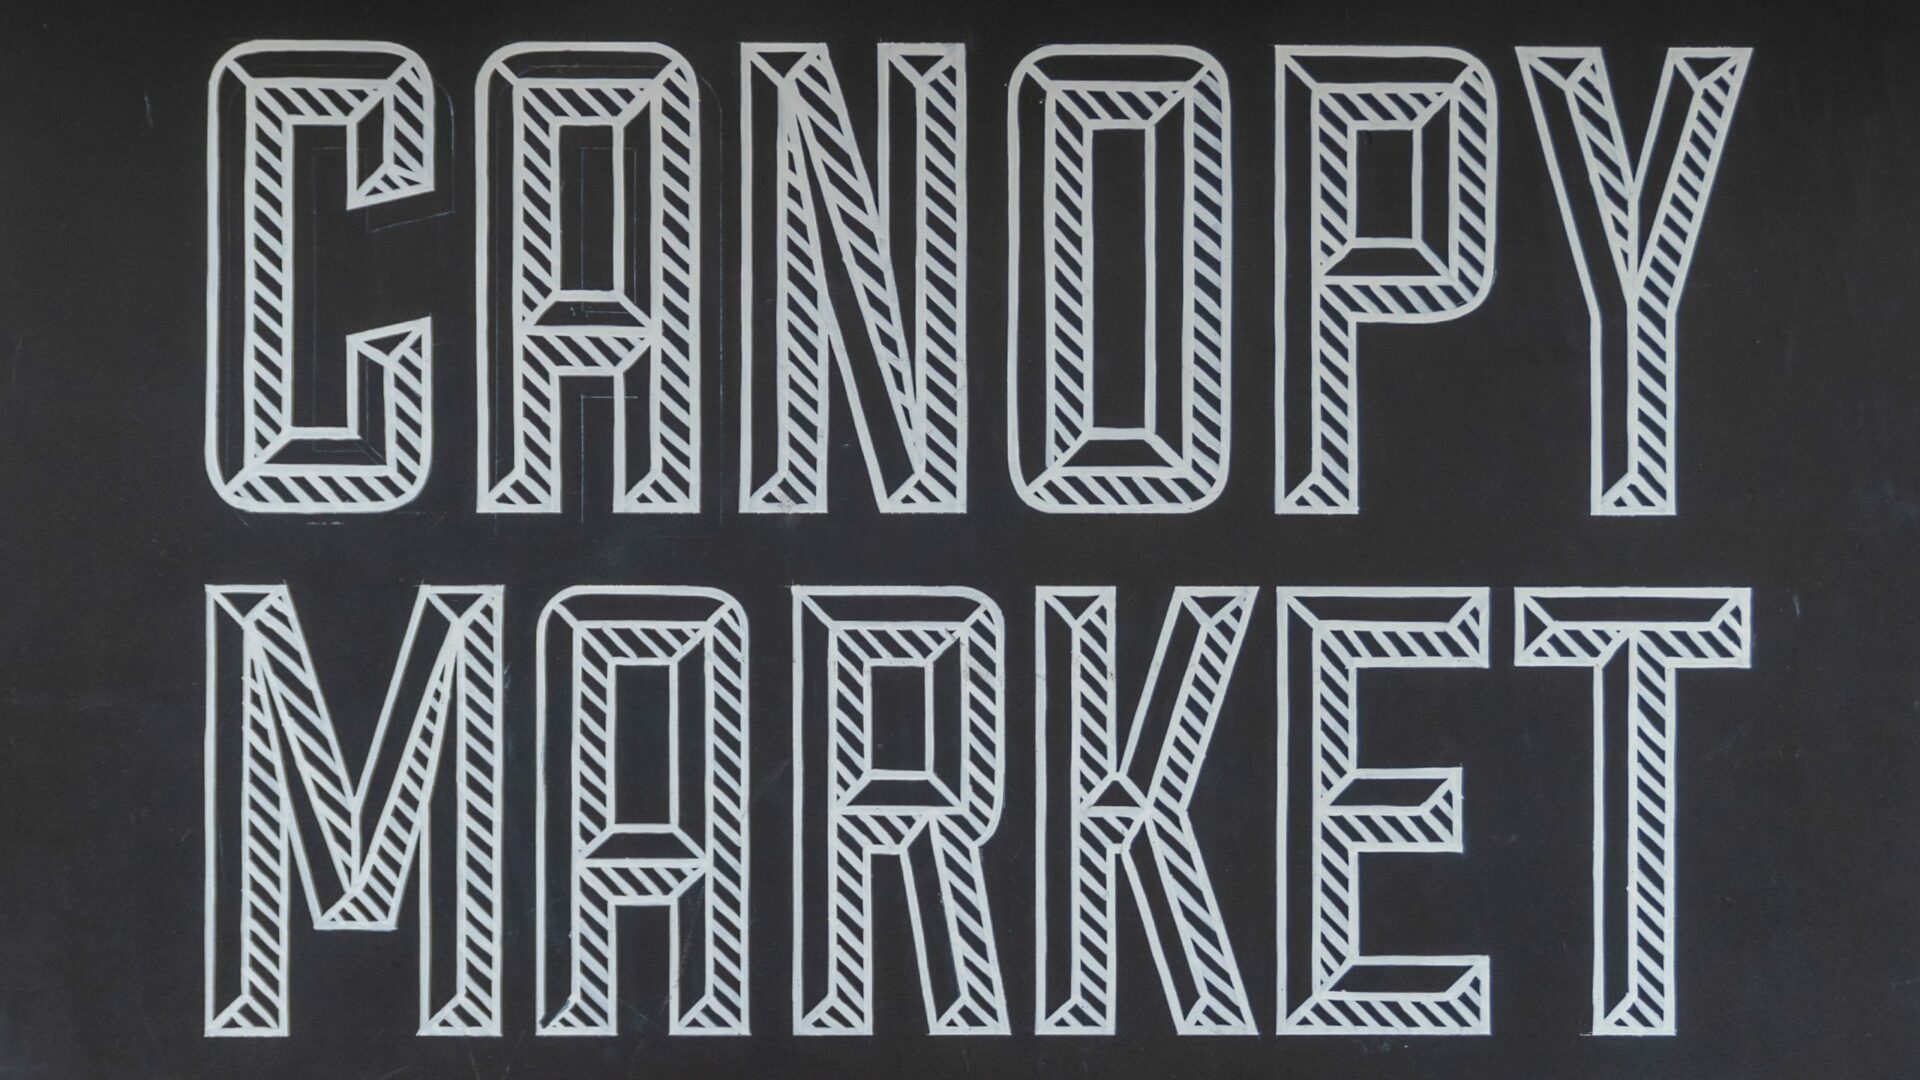 Canopy Market, Handyside Canopy, King's Cross